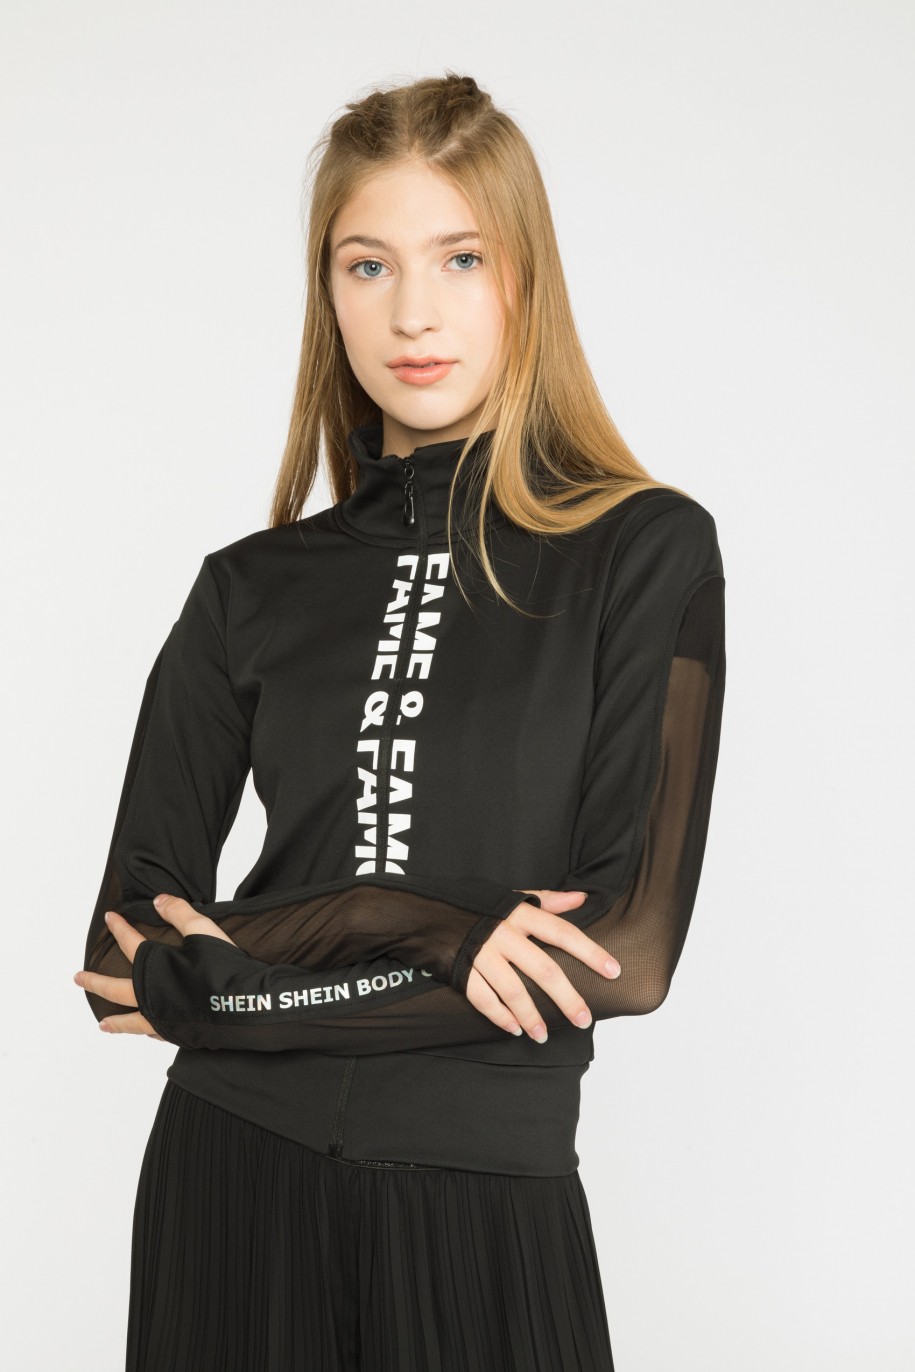 czarna sportowa bluza z przezroczystym rękawem dla dziewczyny reporter young